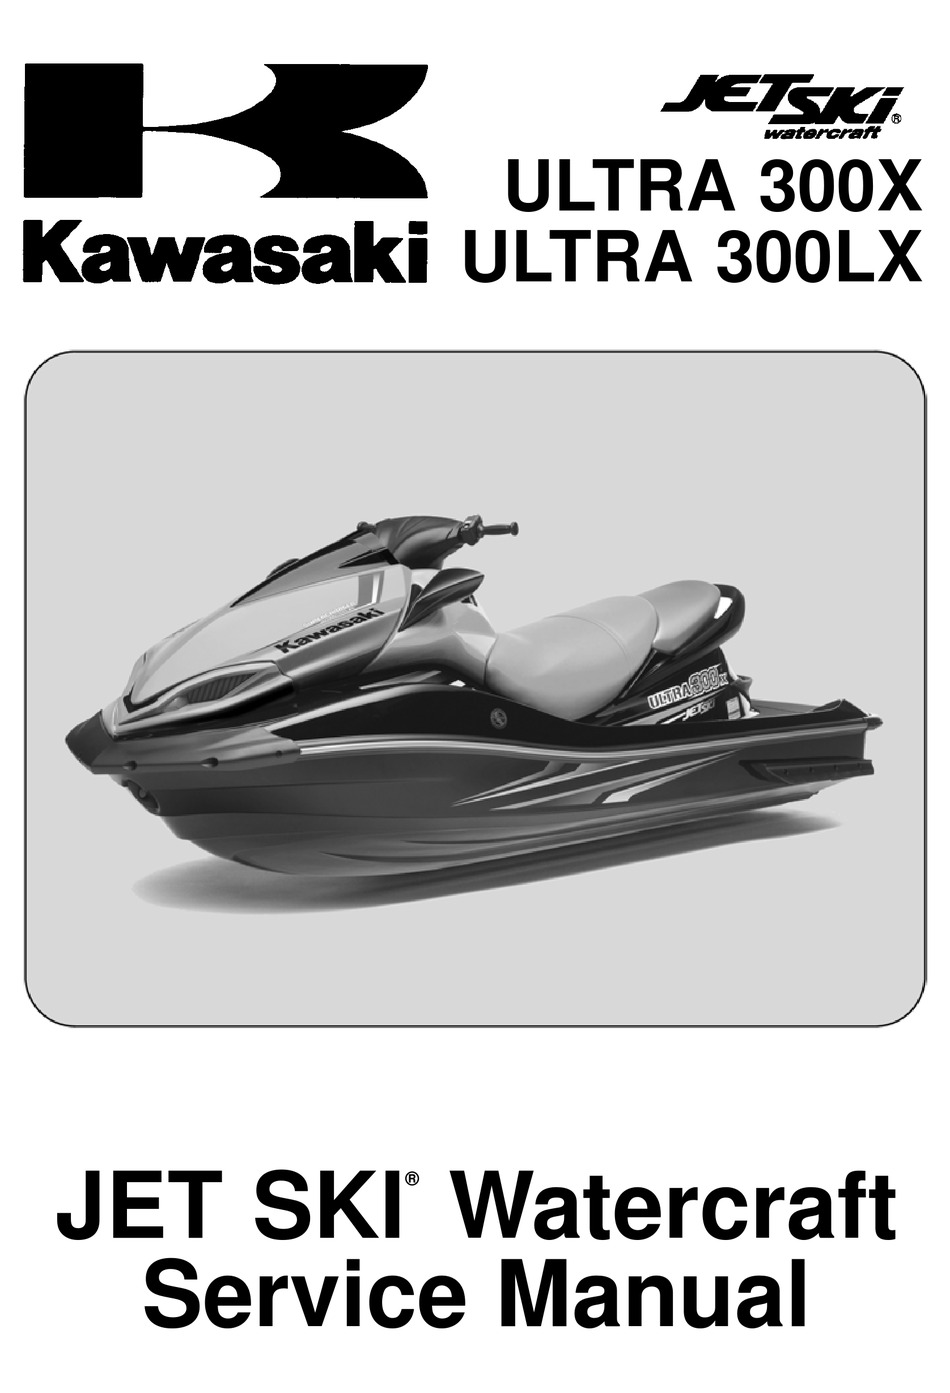 KAWASAKI ULTRA 300LX Pdf Download |